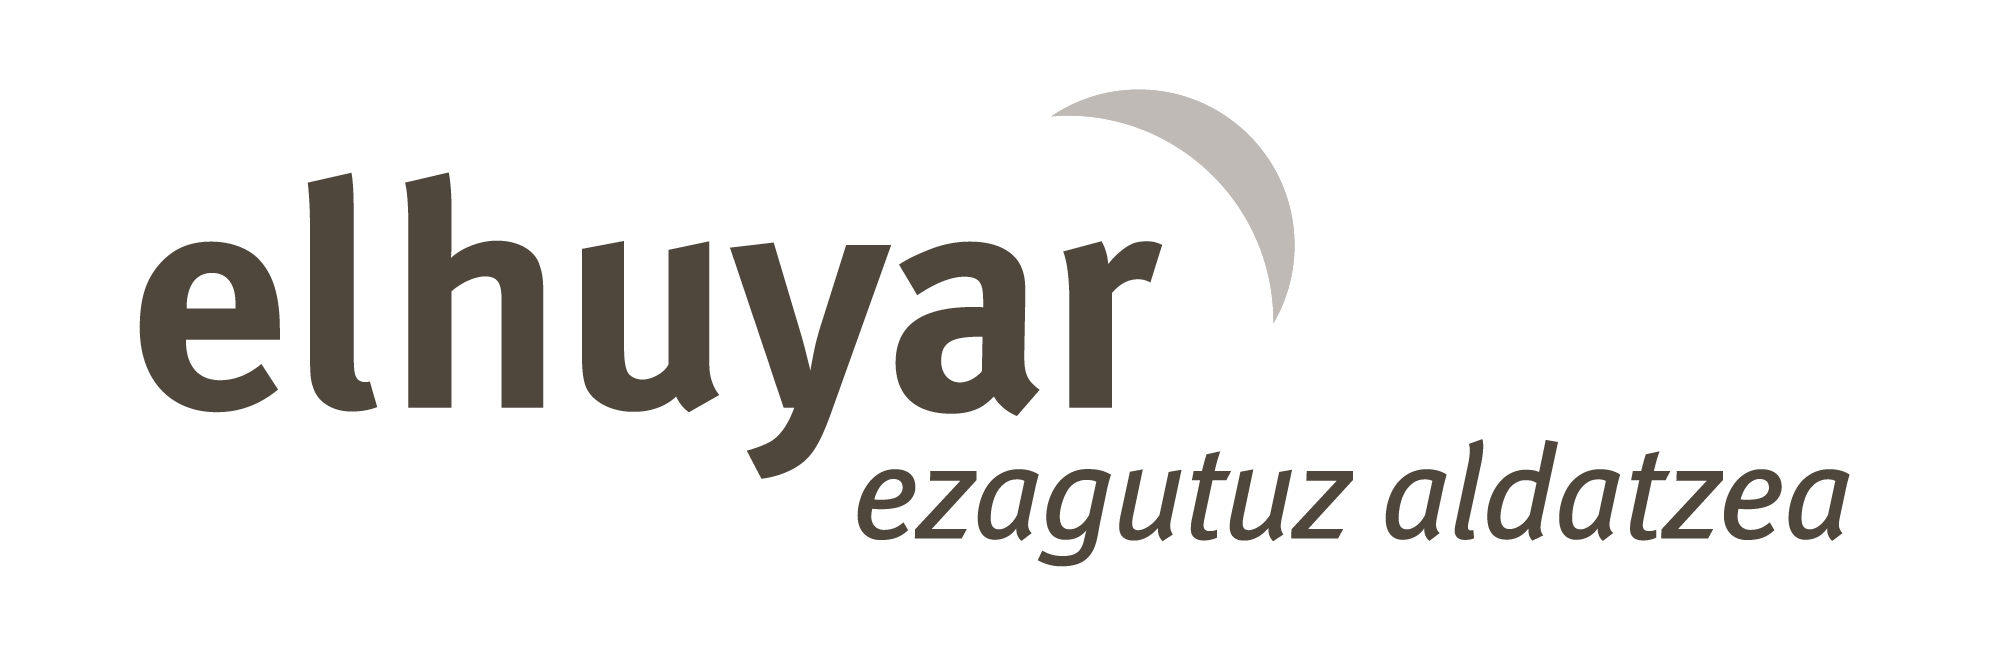 Fondacion Elhuyar